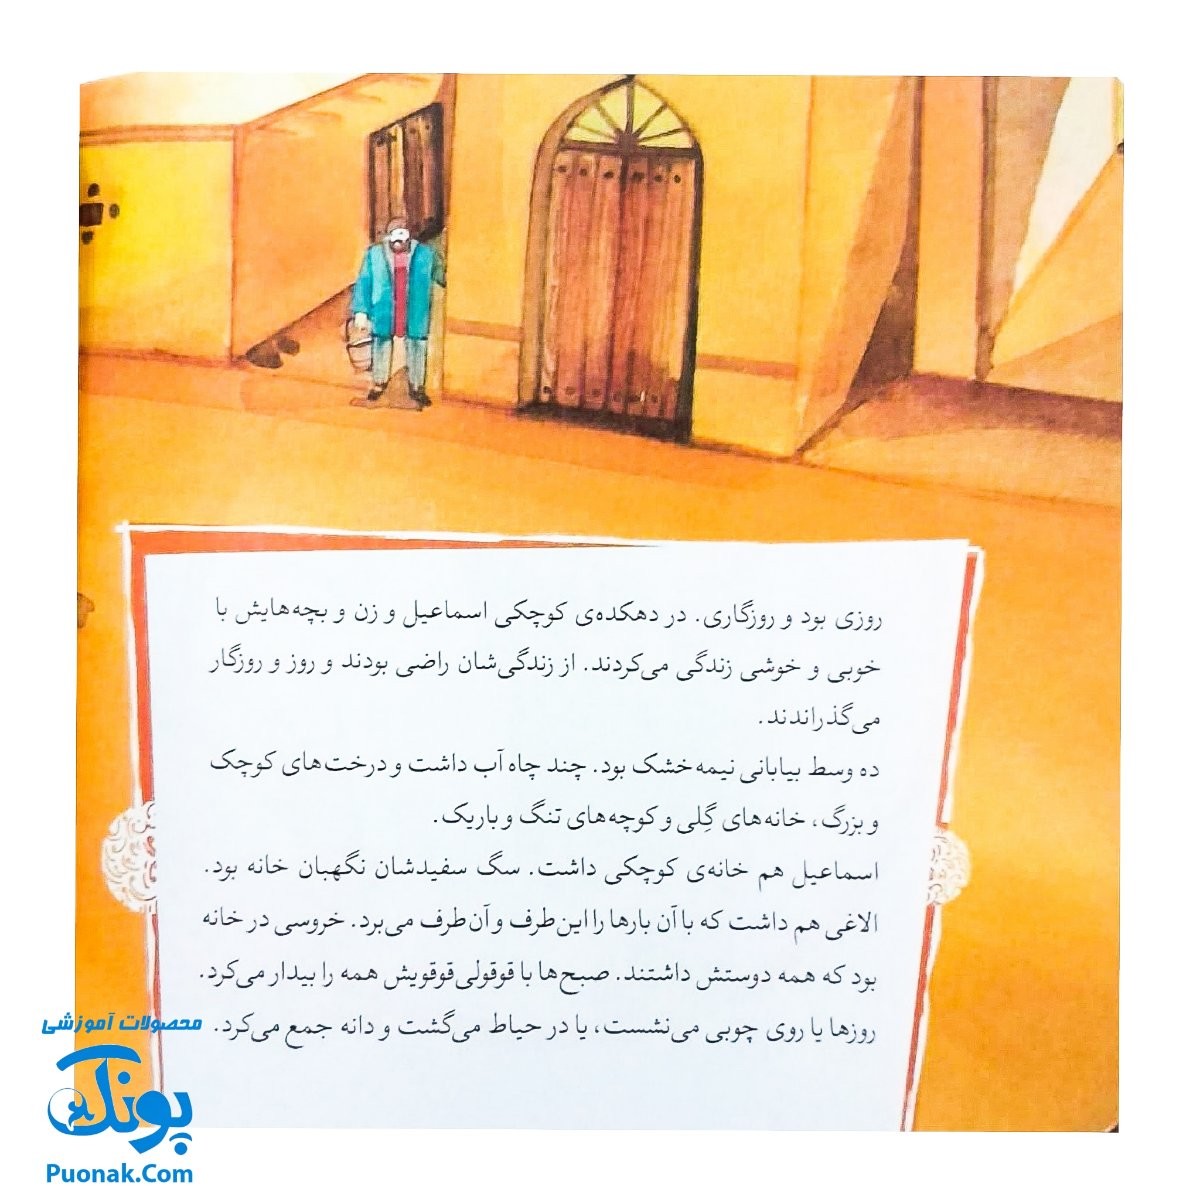 کتاب مجموعه قصه های قشنگ و قدیمی جلد ۱۶ شانزدهم ۱۲ قصه از کیمیای سعادت ابوحامد محمد غزالی